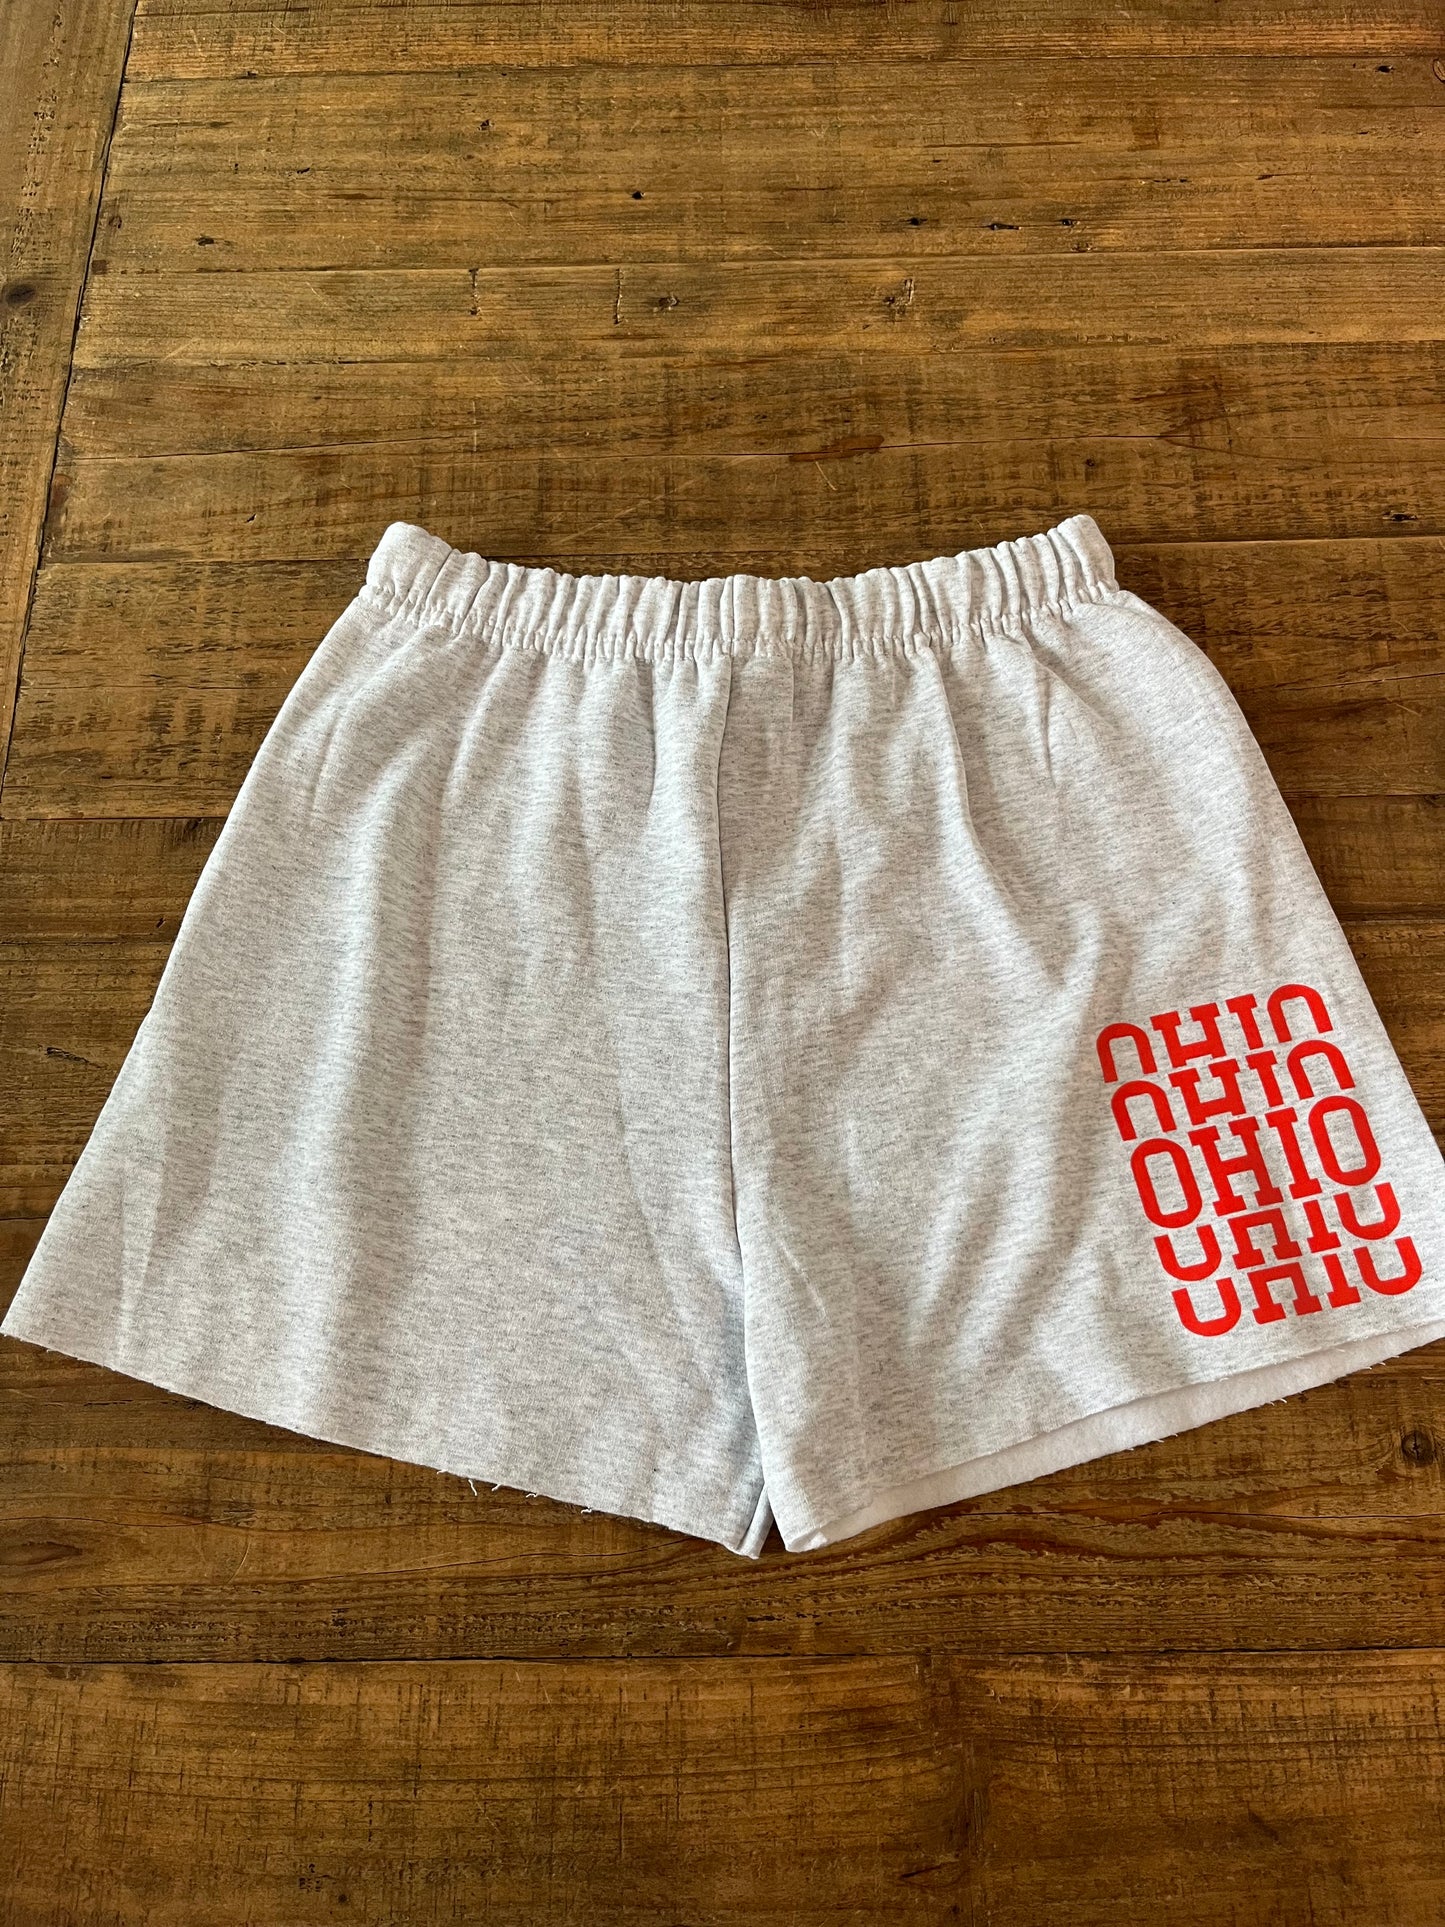 Ohio Stacked Sweat Shorts